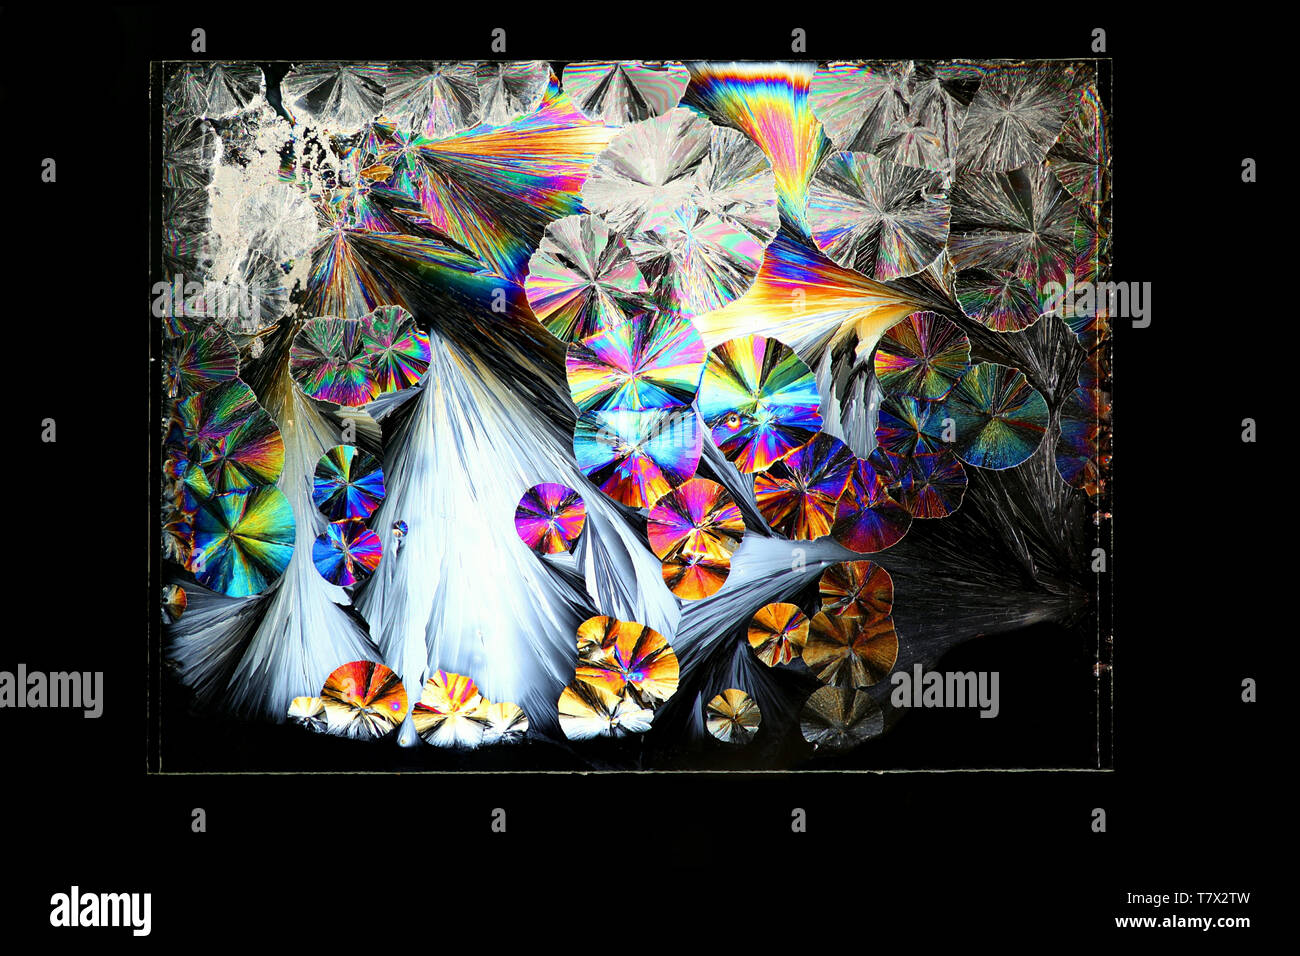 Kristalle von Zitronensäure, Konservierungsmittel, ein gemeinsames Essen im Cross fotografiert - polarisiertes Licht Stockfoto